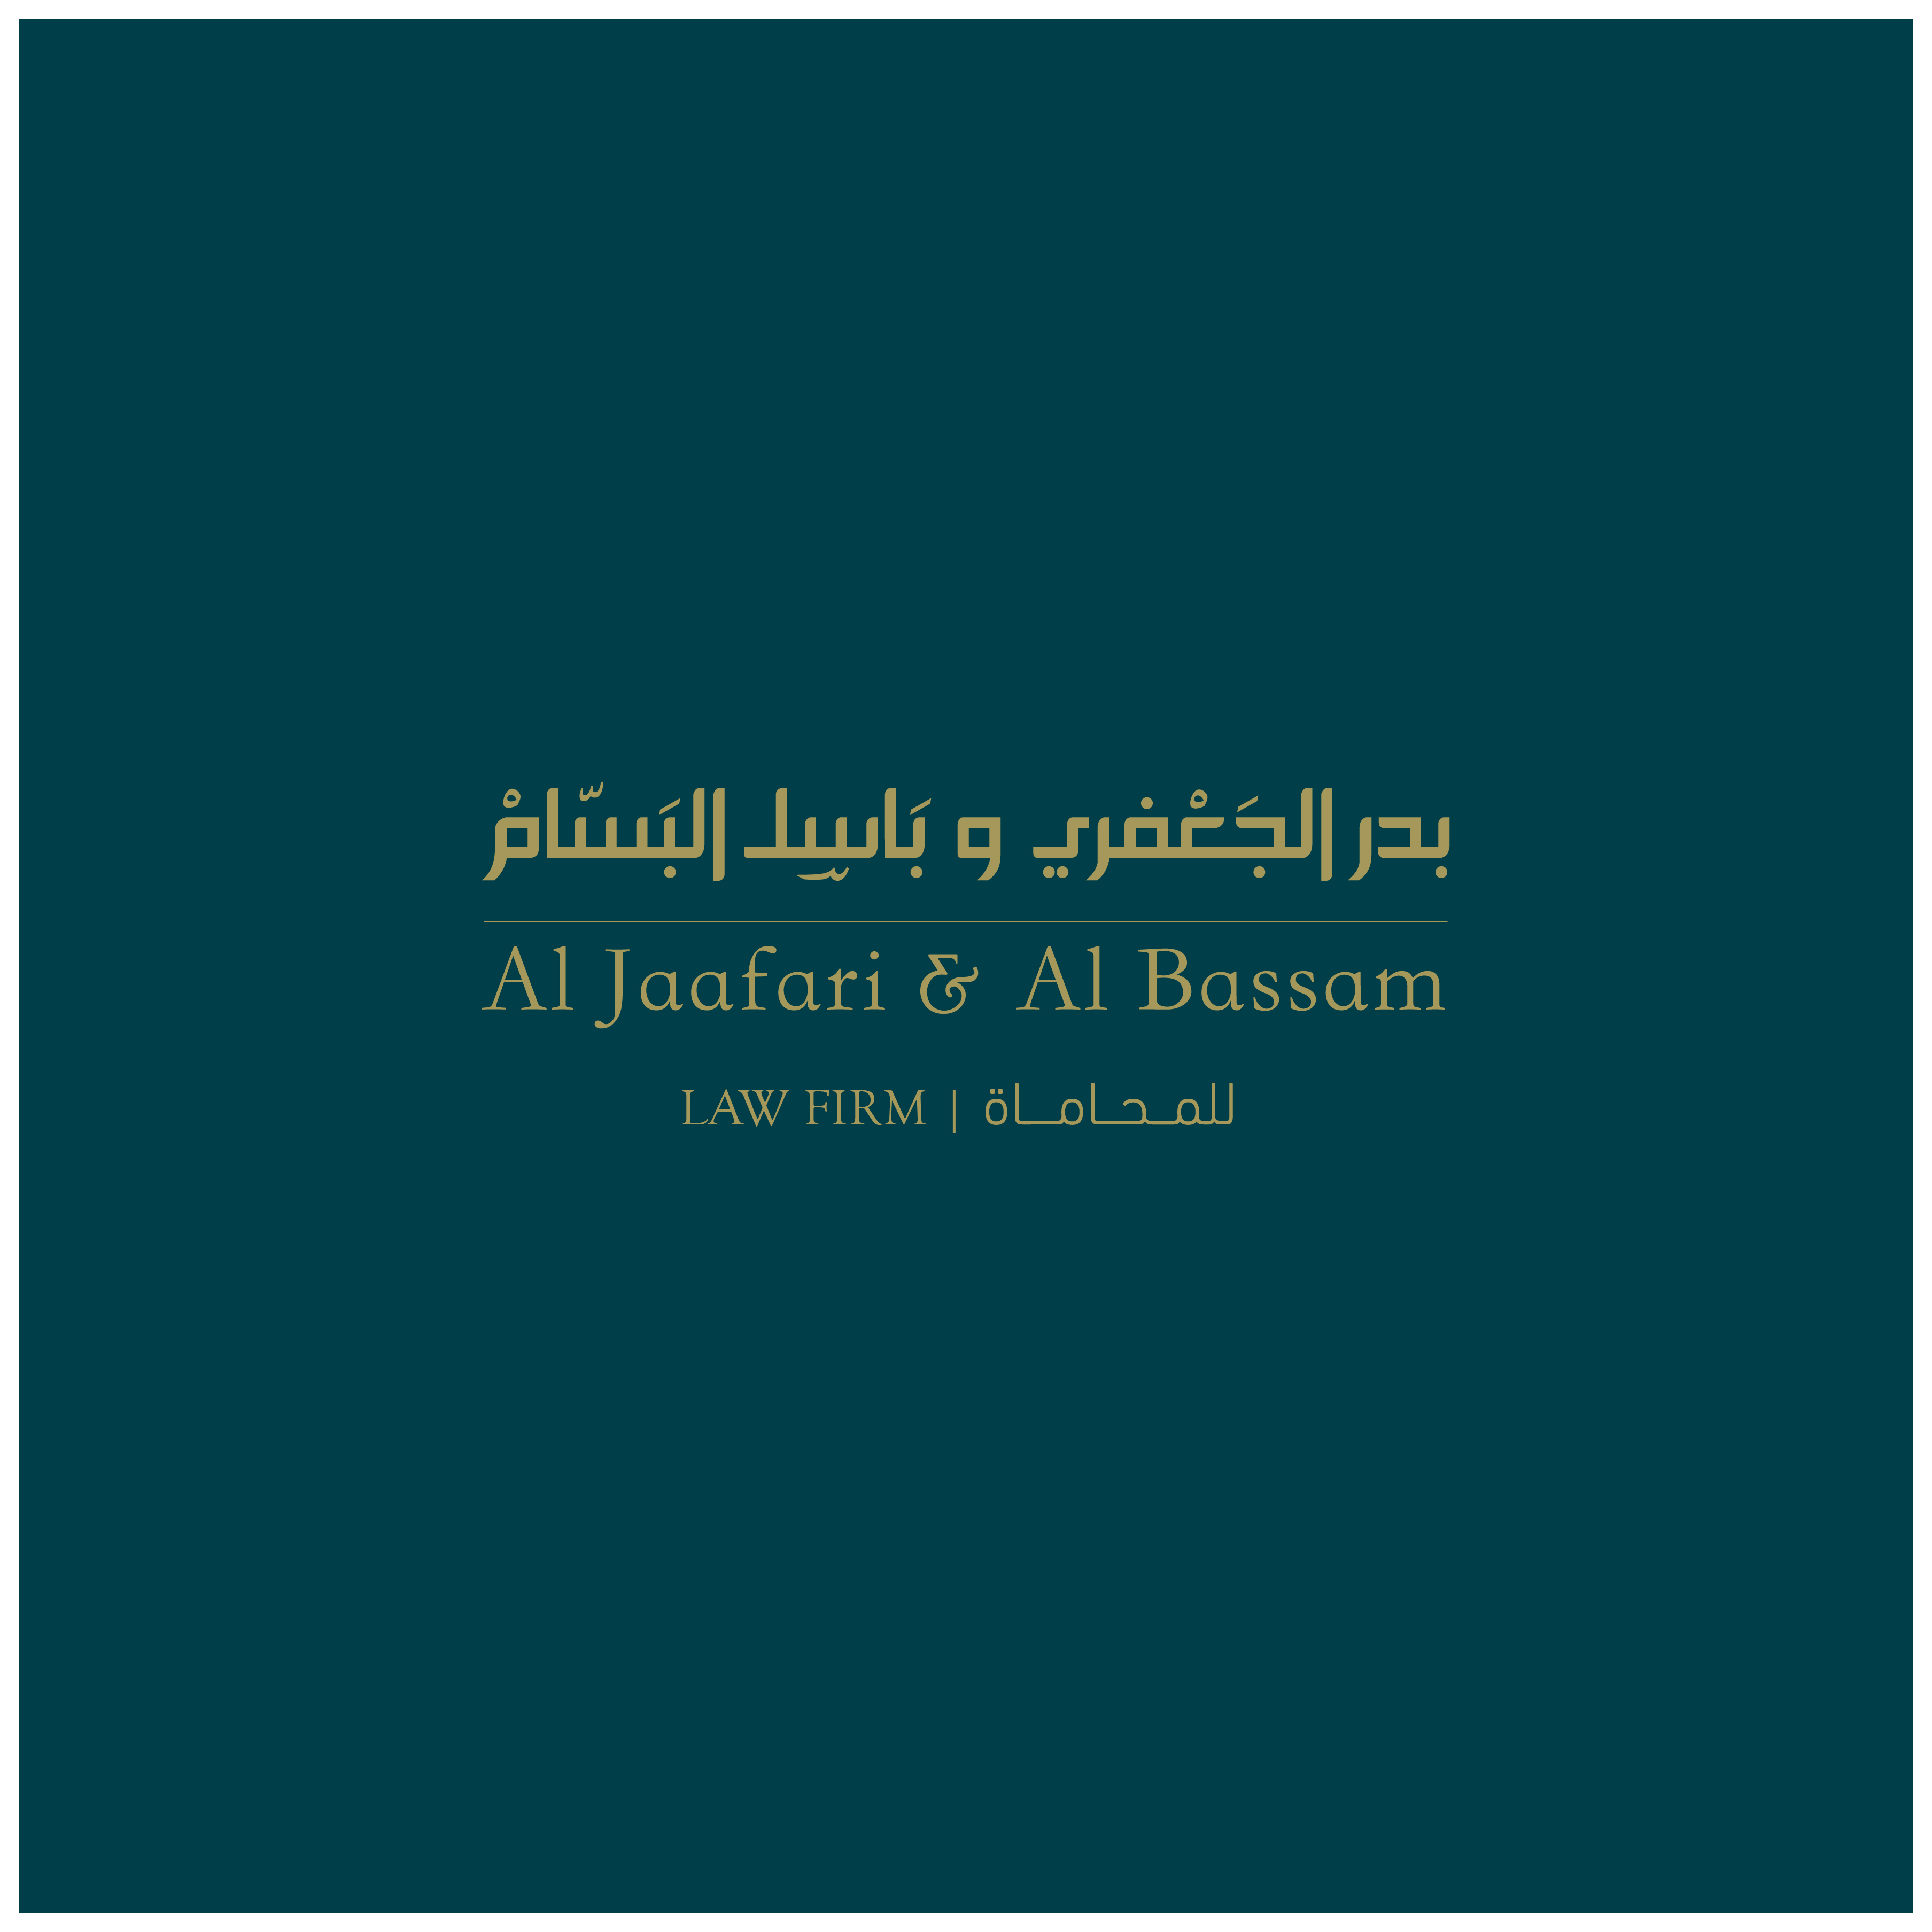 Al Jaafari & Al Bassam Law Firm